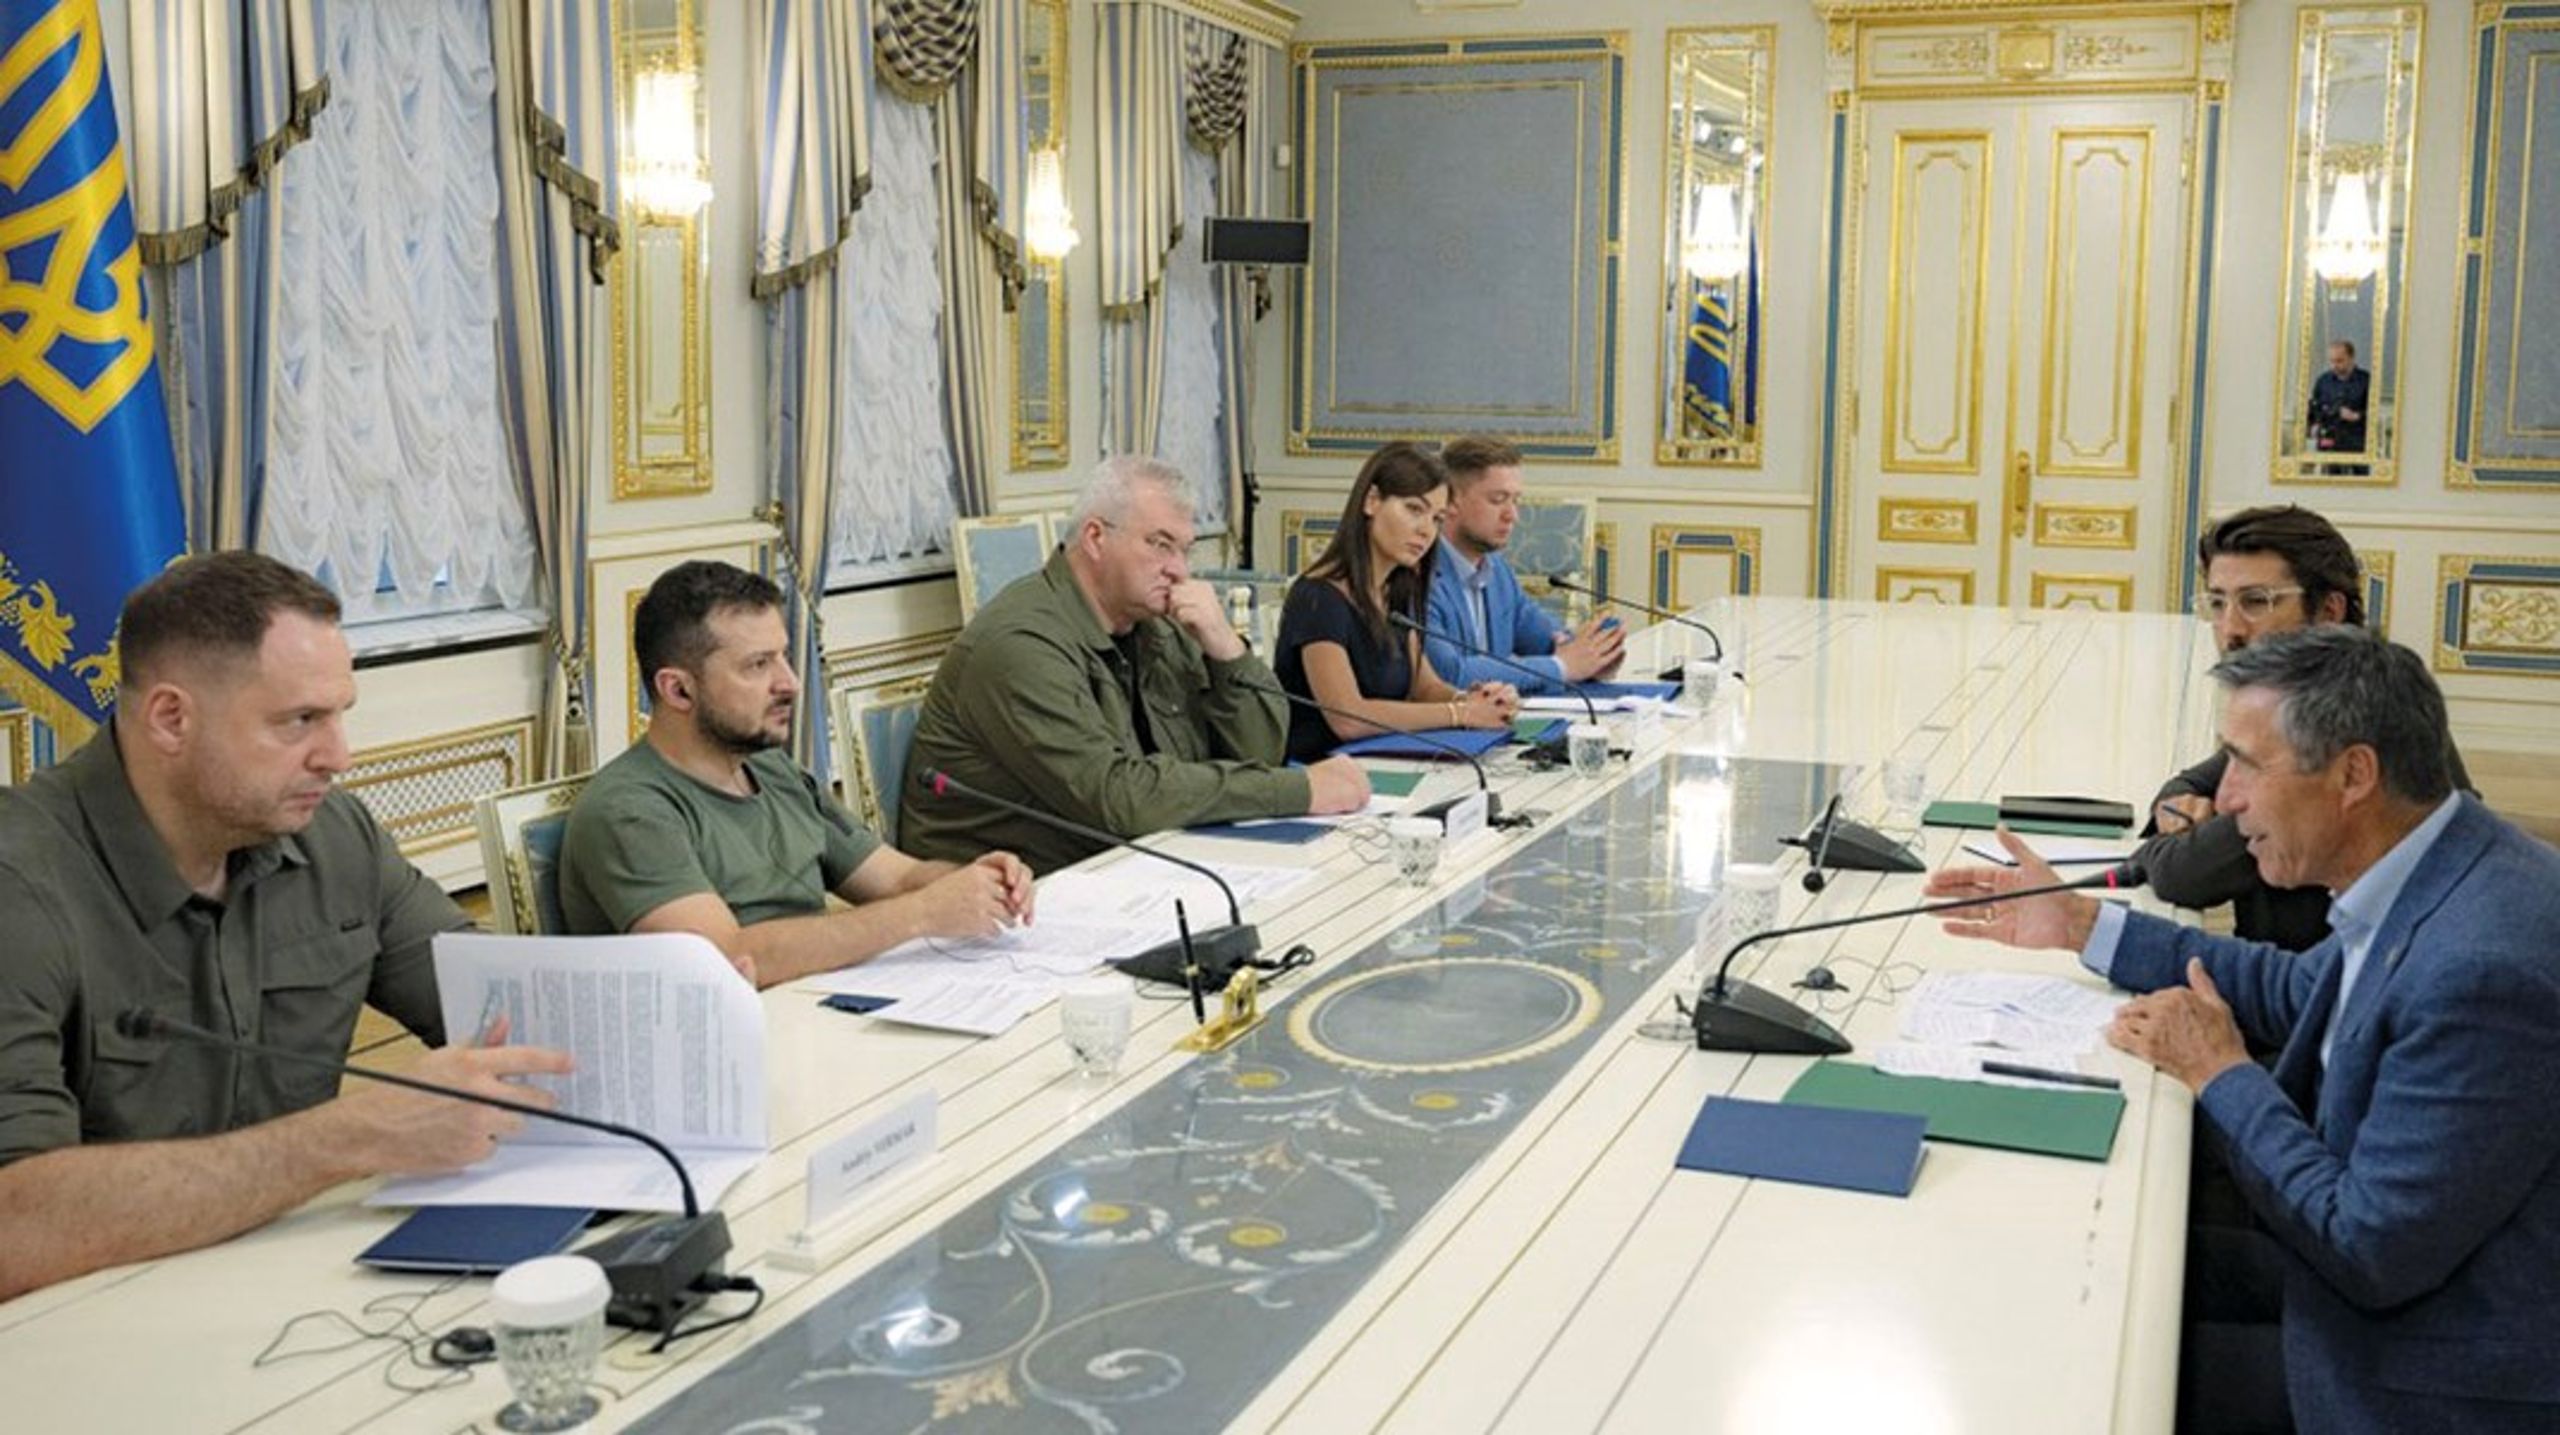 Anders Fogh Rasmussen til møde med
præsident Zelenskyj i Kyiv i september 2022. Til venstre i billedet ses Andriy
Yermak, mens manden til højre for Fogh Rasmussen er Fabrice Pothier, som siden
2022 har været CEO i Rasmussen Global Consultancy.